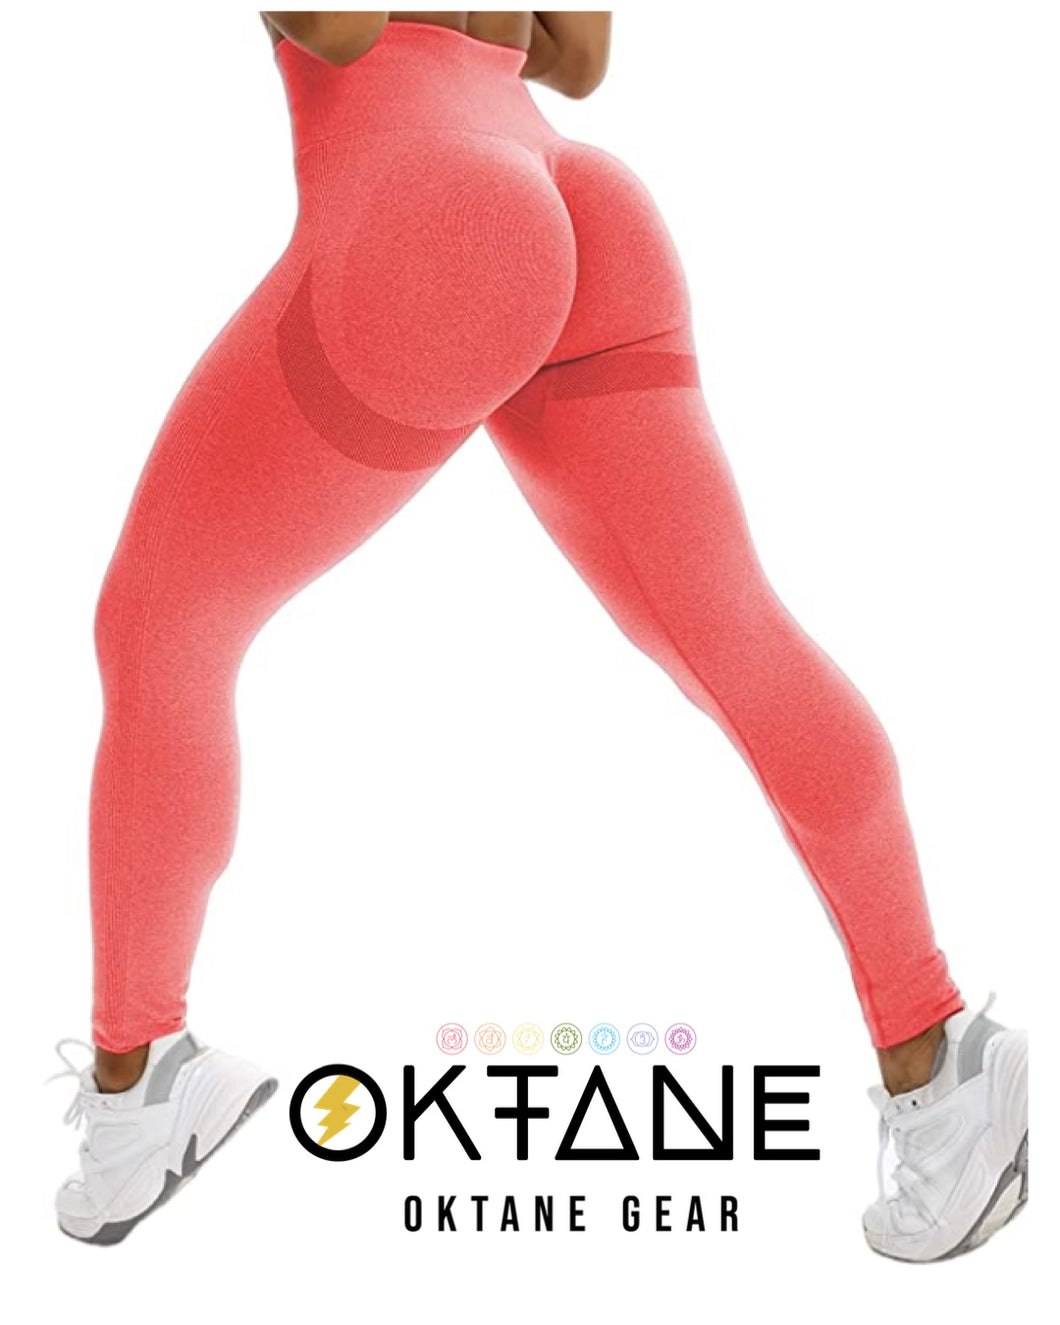 Oktane Gear Women High Waisted Seamless Leggings